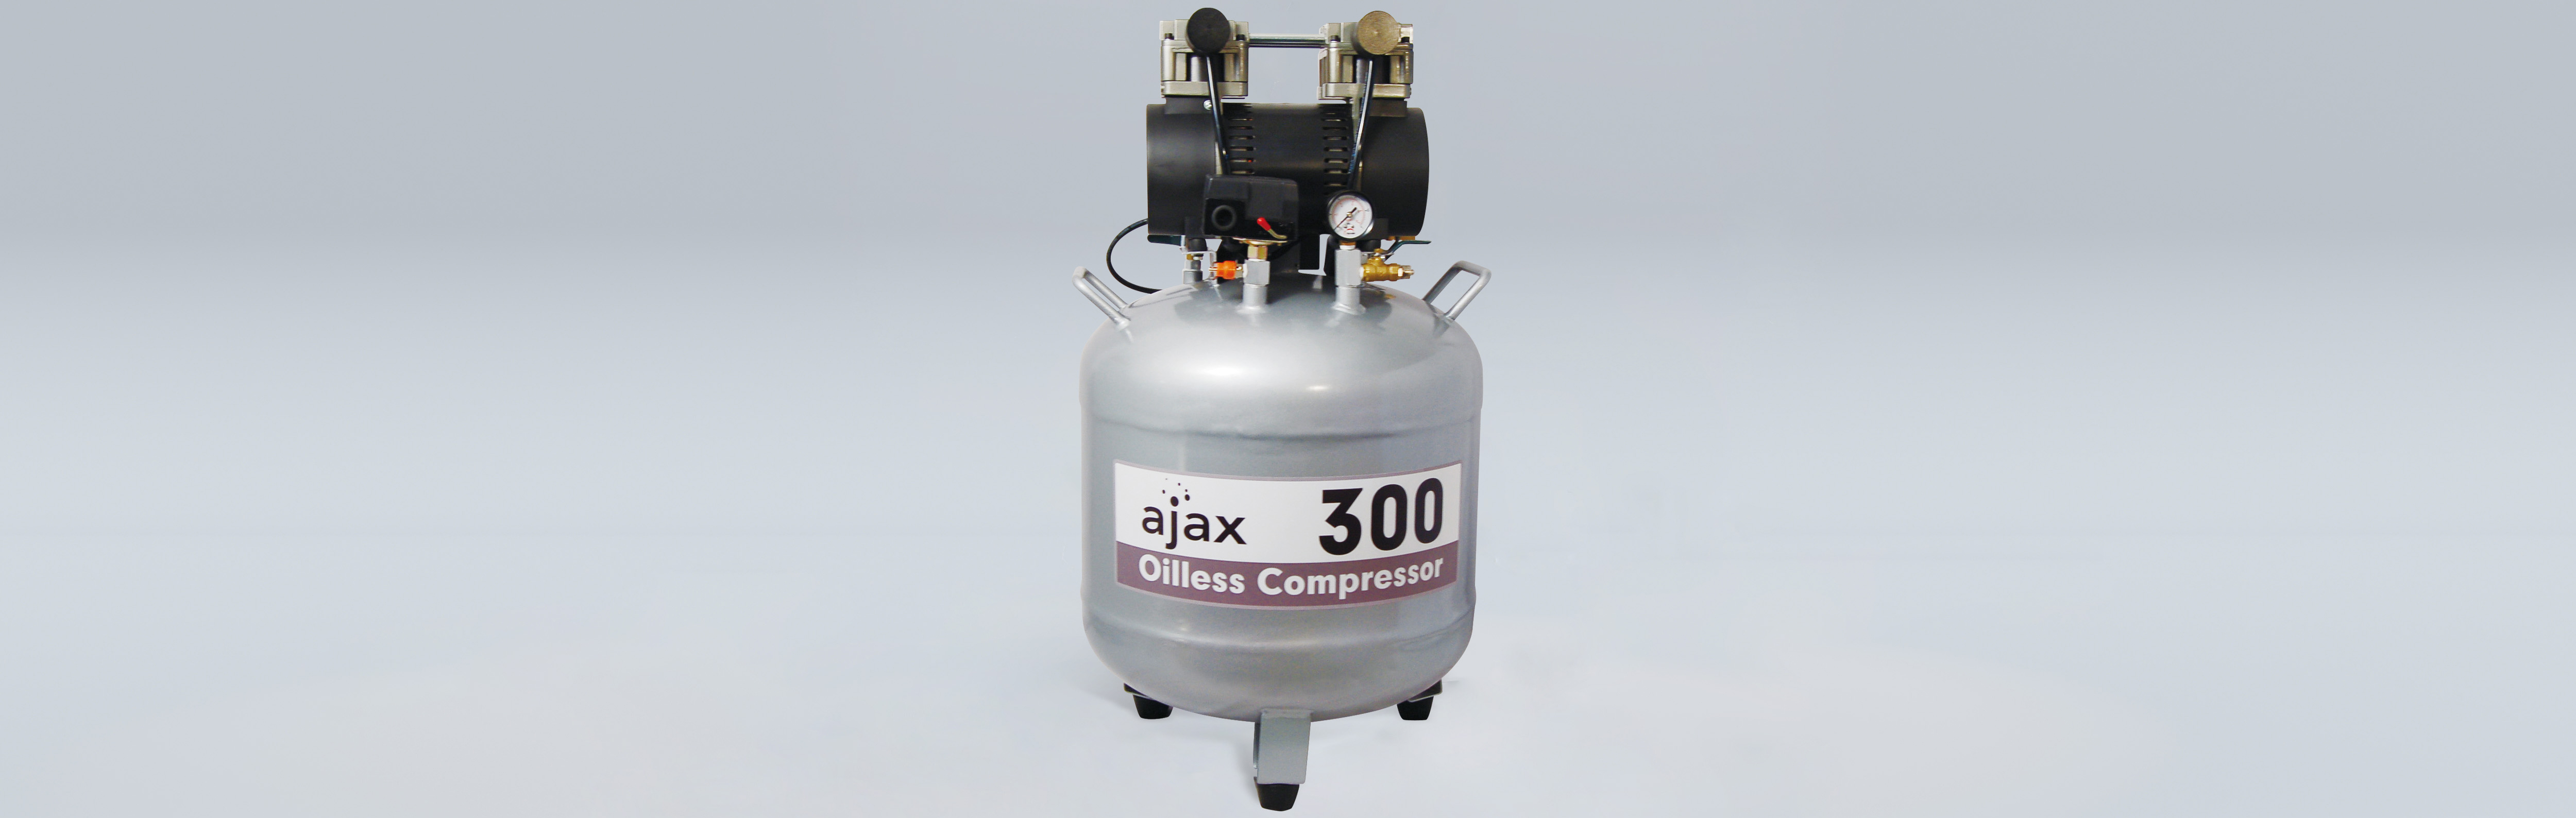 Compresseur d'air Ajax 300